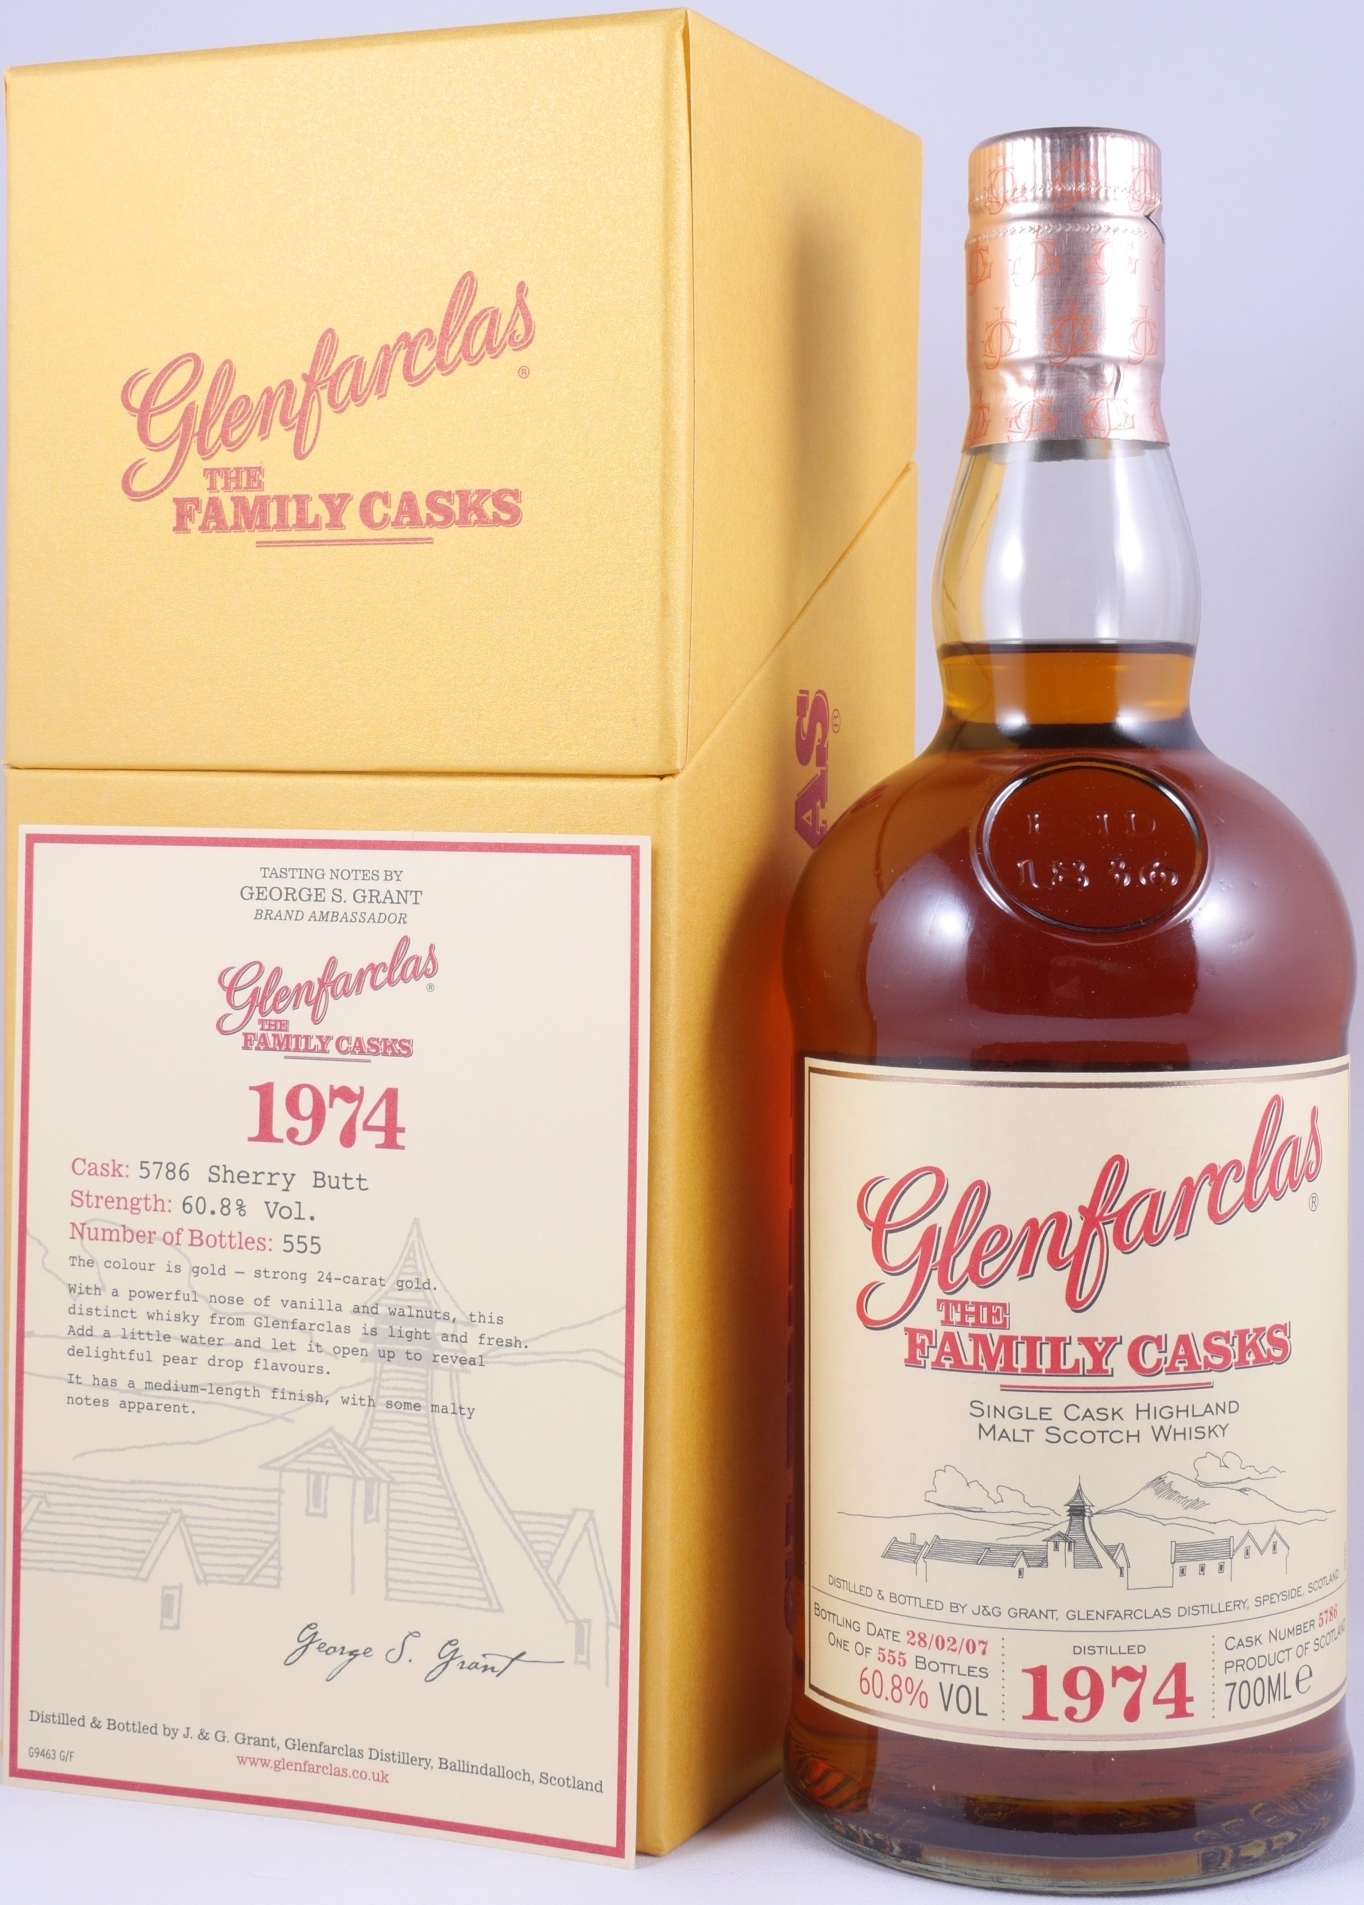 Glenfarclas 1974 32 Years The Family Casks Sherry Butt Cask No. 5786  Highland Single Malt Scotch Whisky Cask Strength 60,8% Vol. Bei Amcom  Sicher Online Bestellen